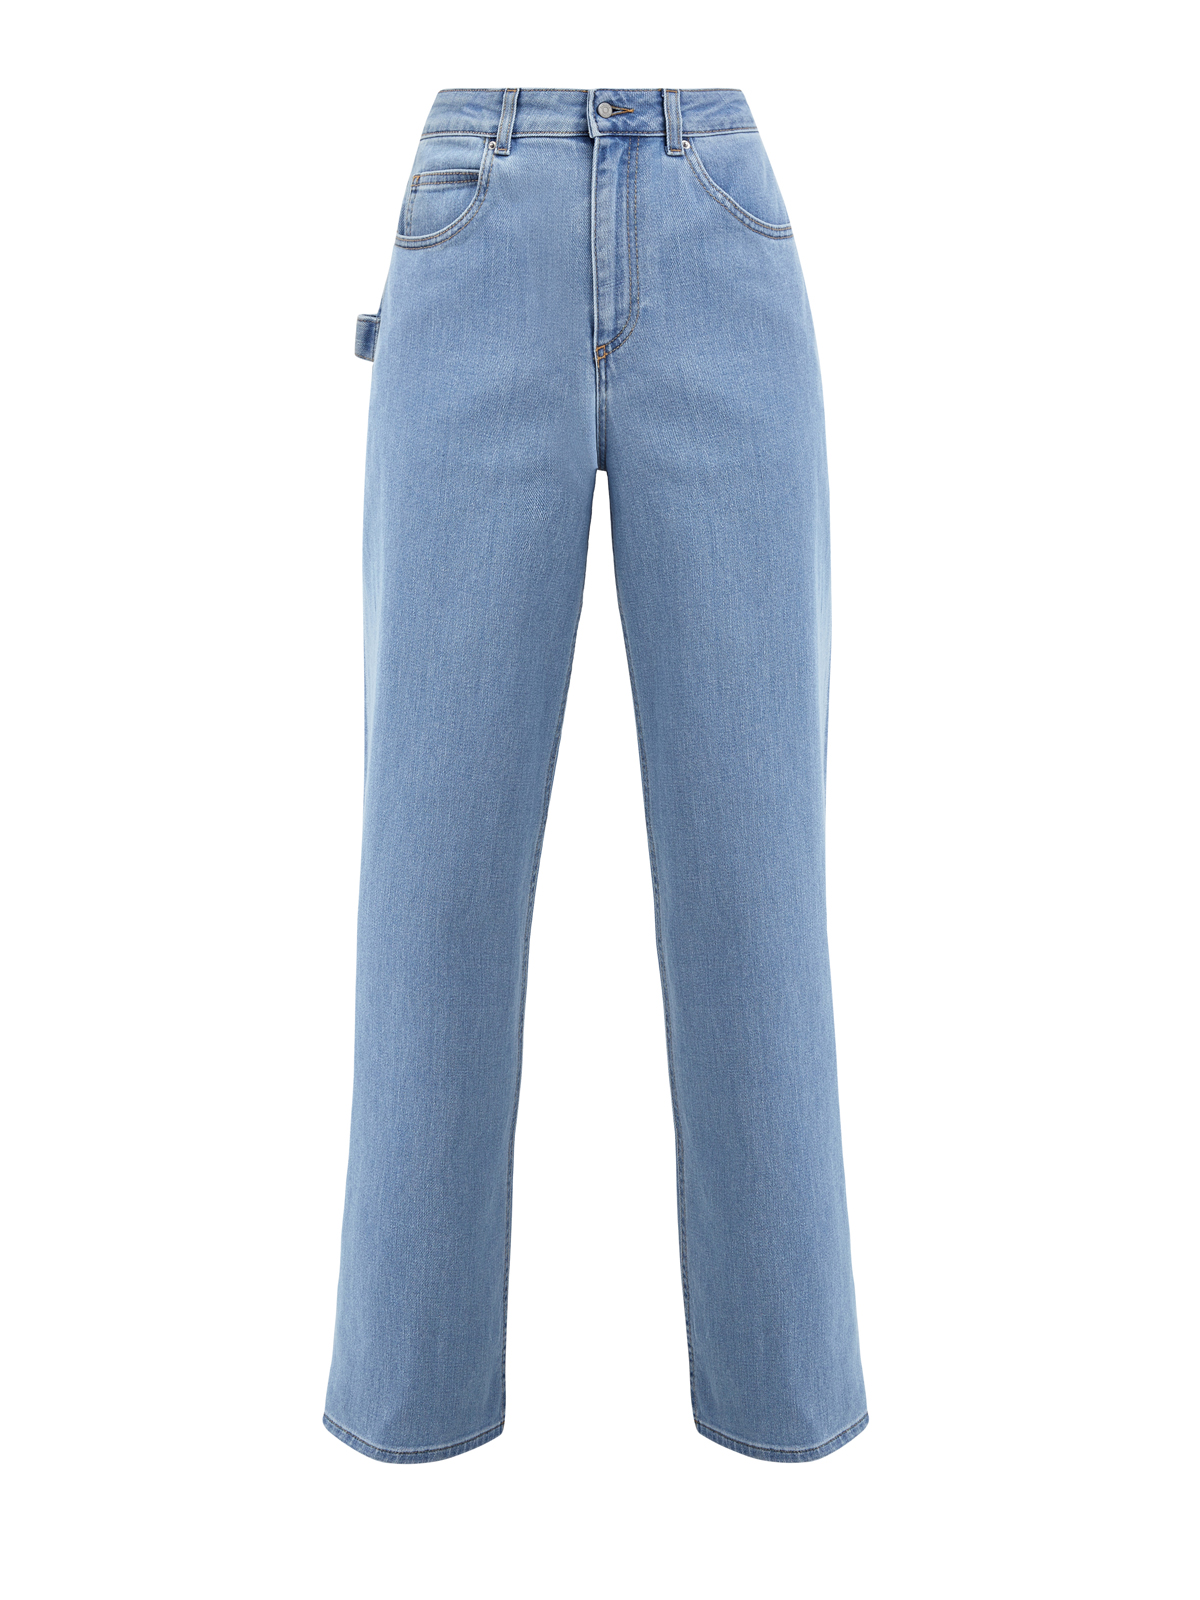 Удлиненные джинсы-клеш с контрастной прострочкой